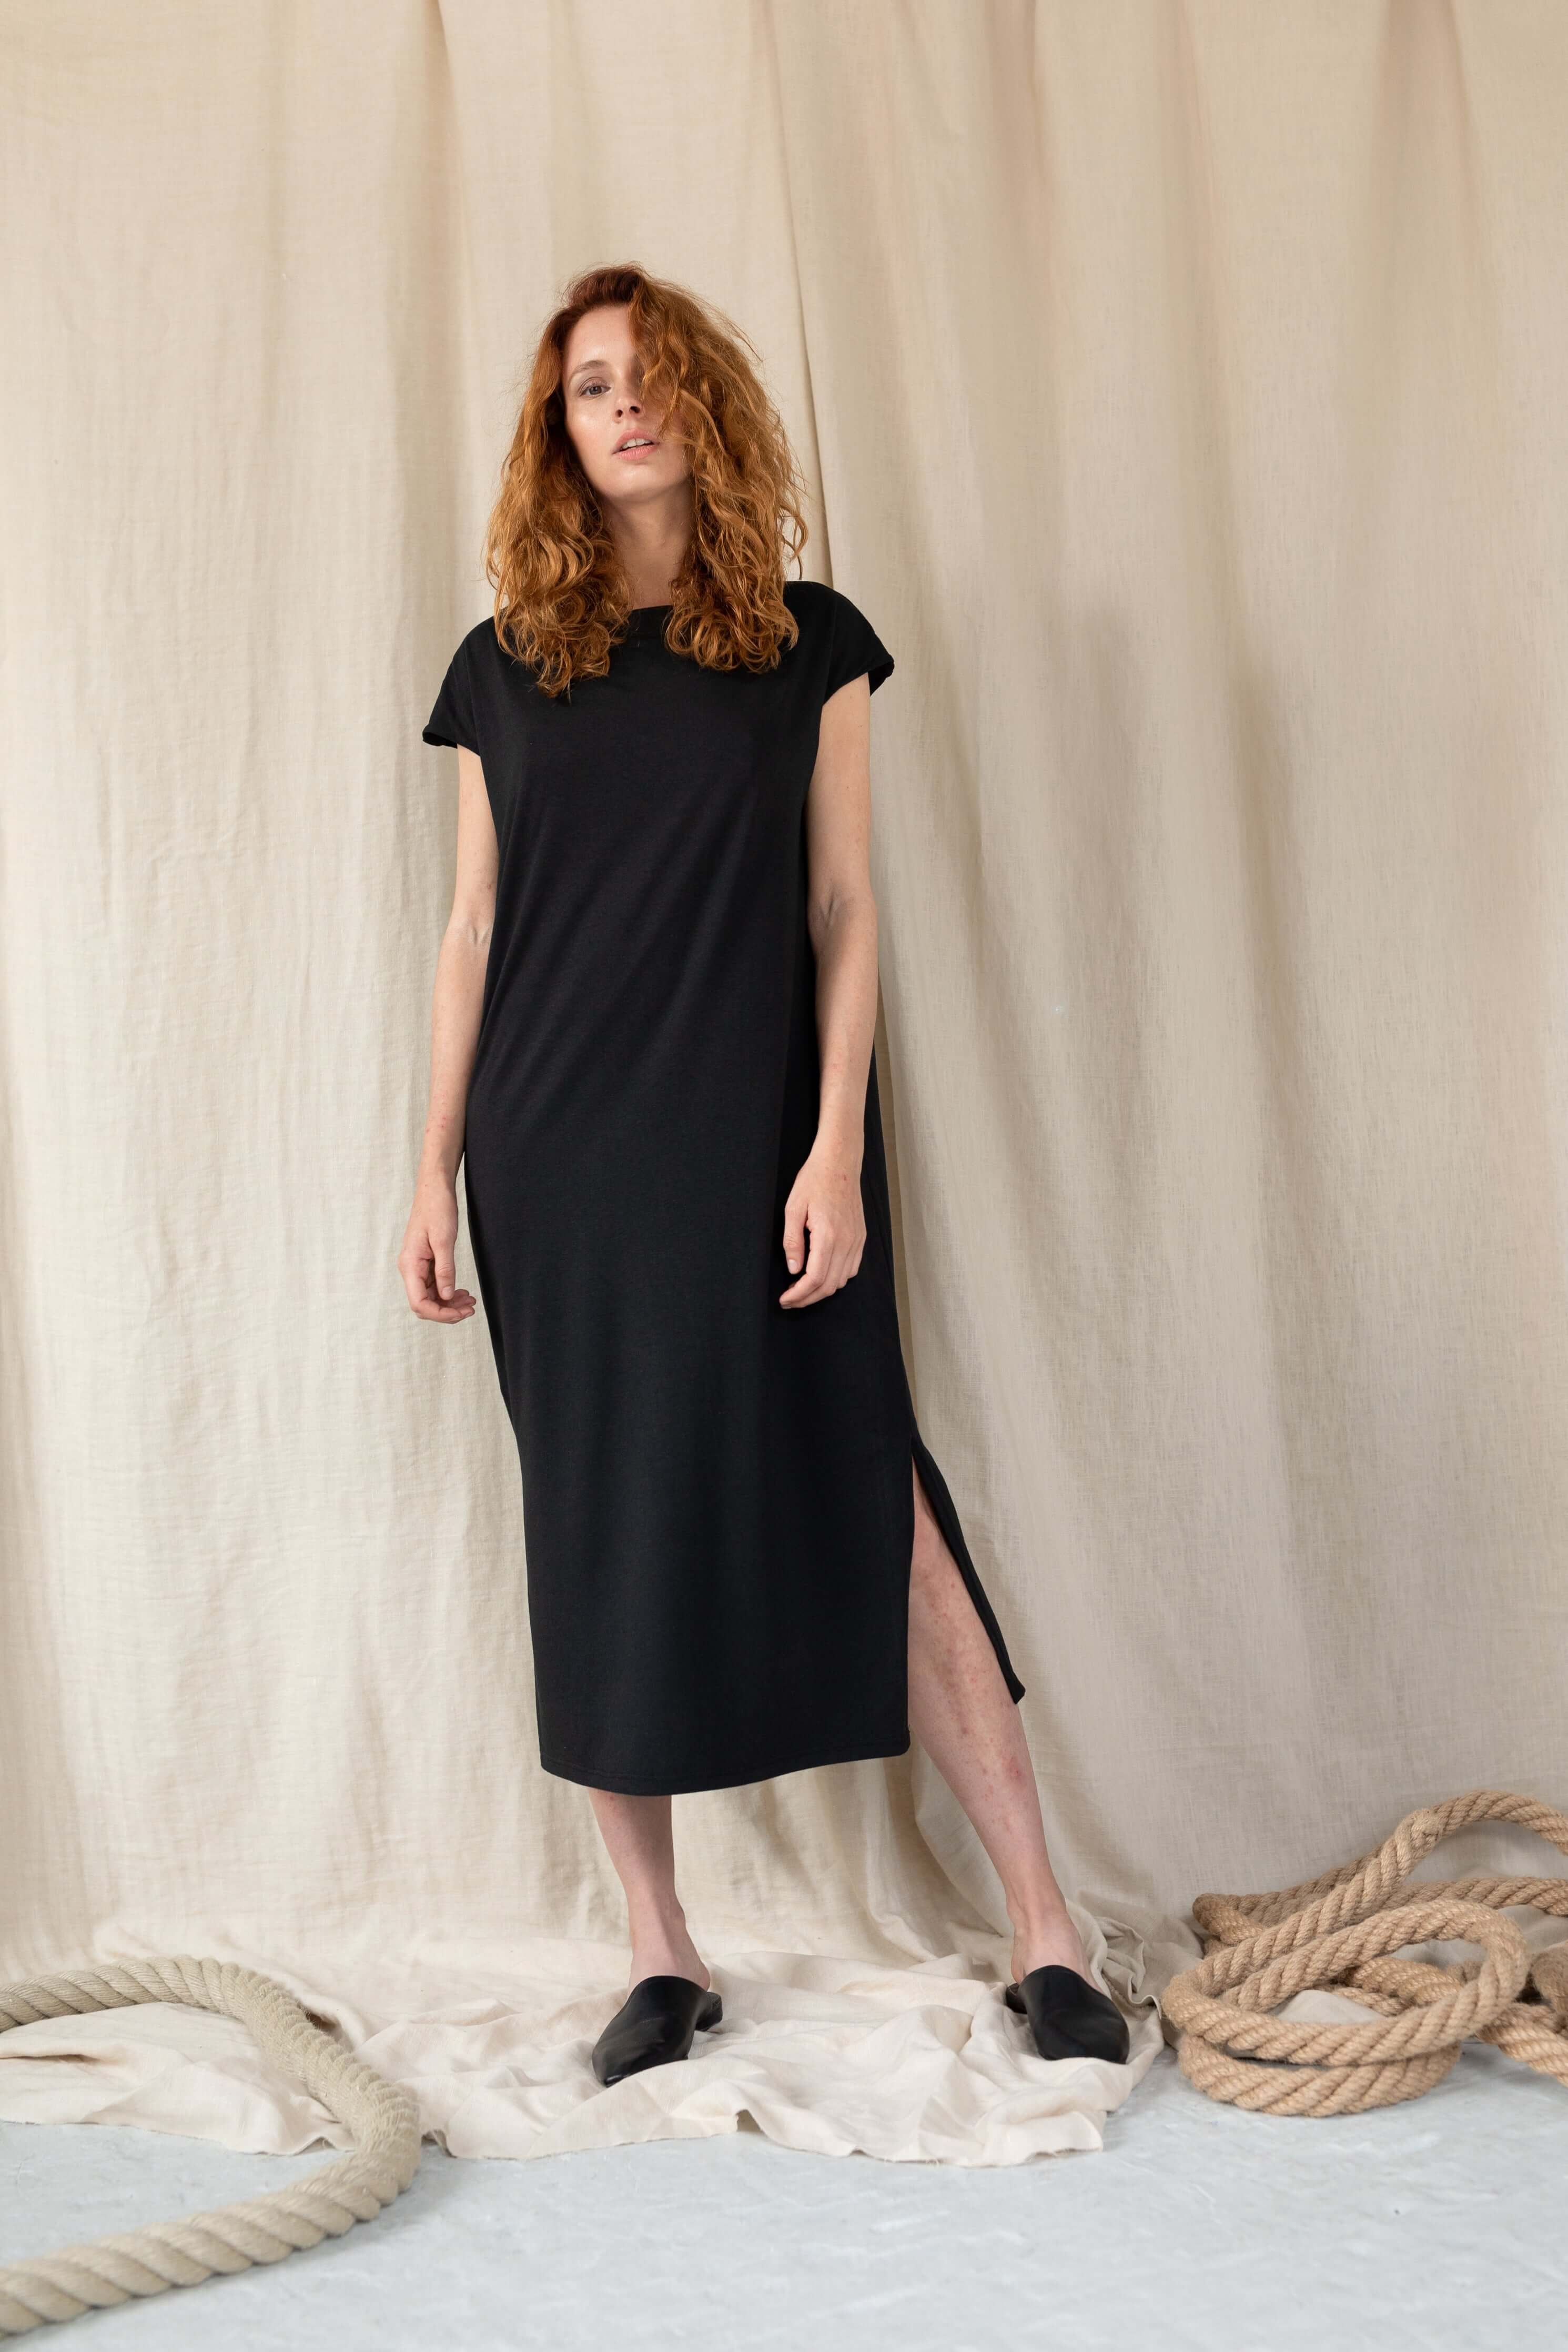 Volné Wear Me černé šaty s kapsami jsou vyrobené z mixu bambusu a organické GOTS bio bavlny. Pohodlný simple kousek. ADVA Studios